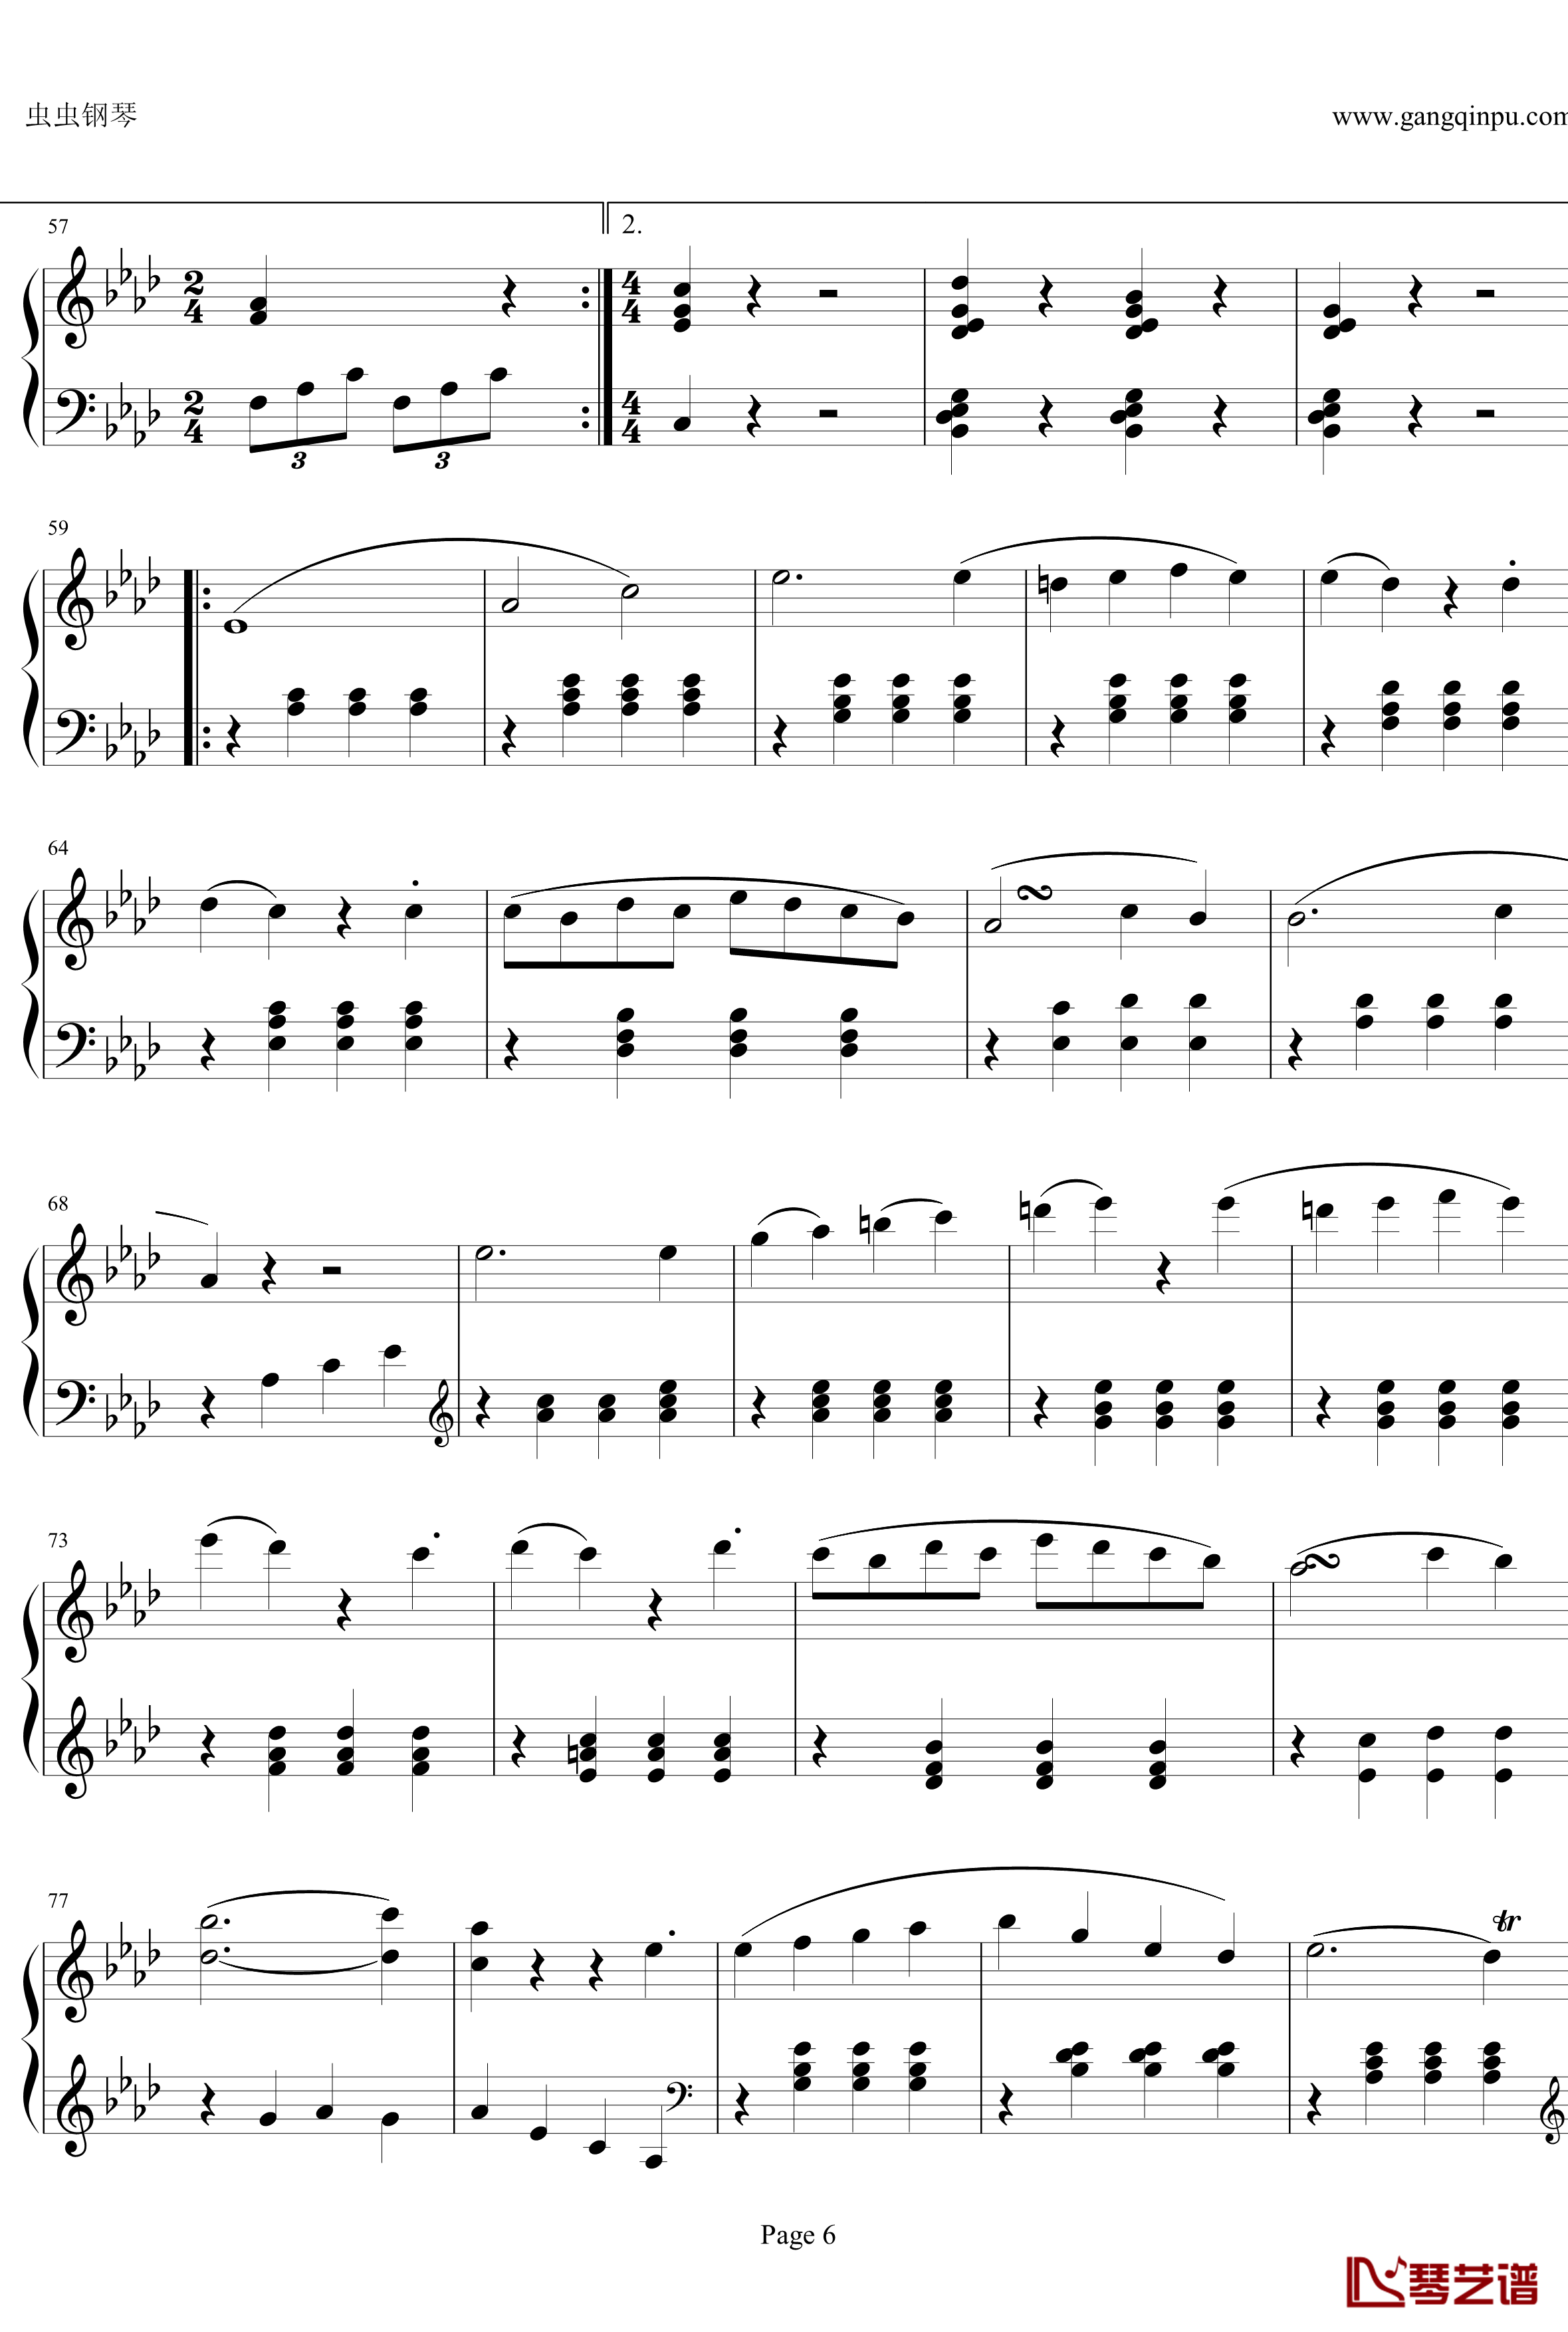 贝多芬第一钢琴奏鸣曲钢琴谱-作品2，第一号-贝多芬-beethoven